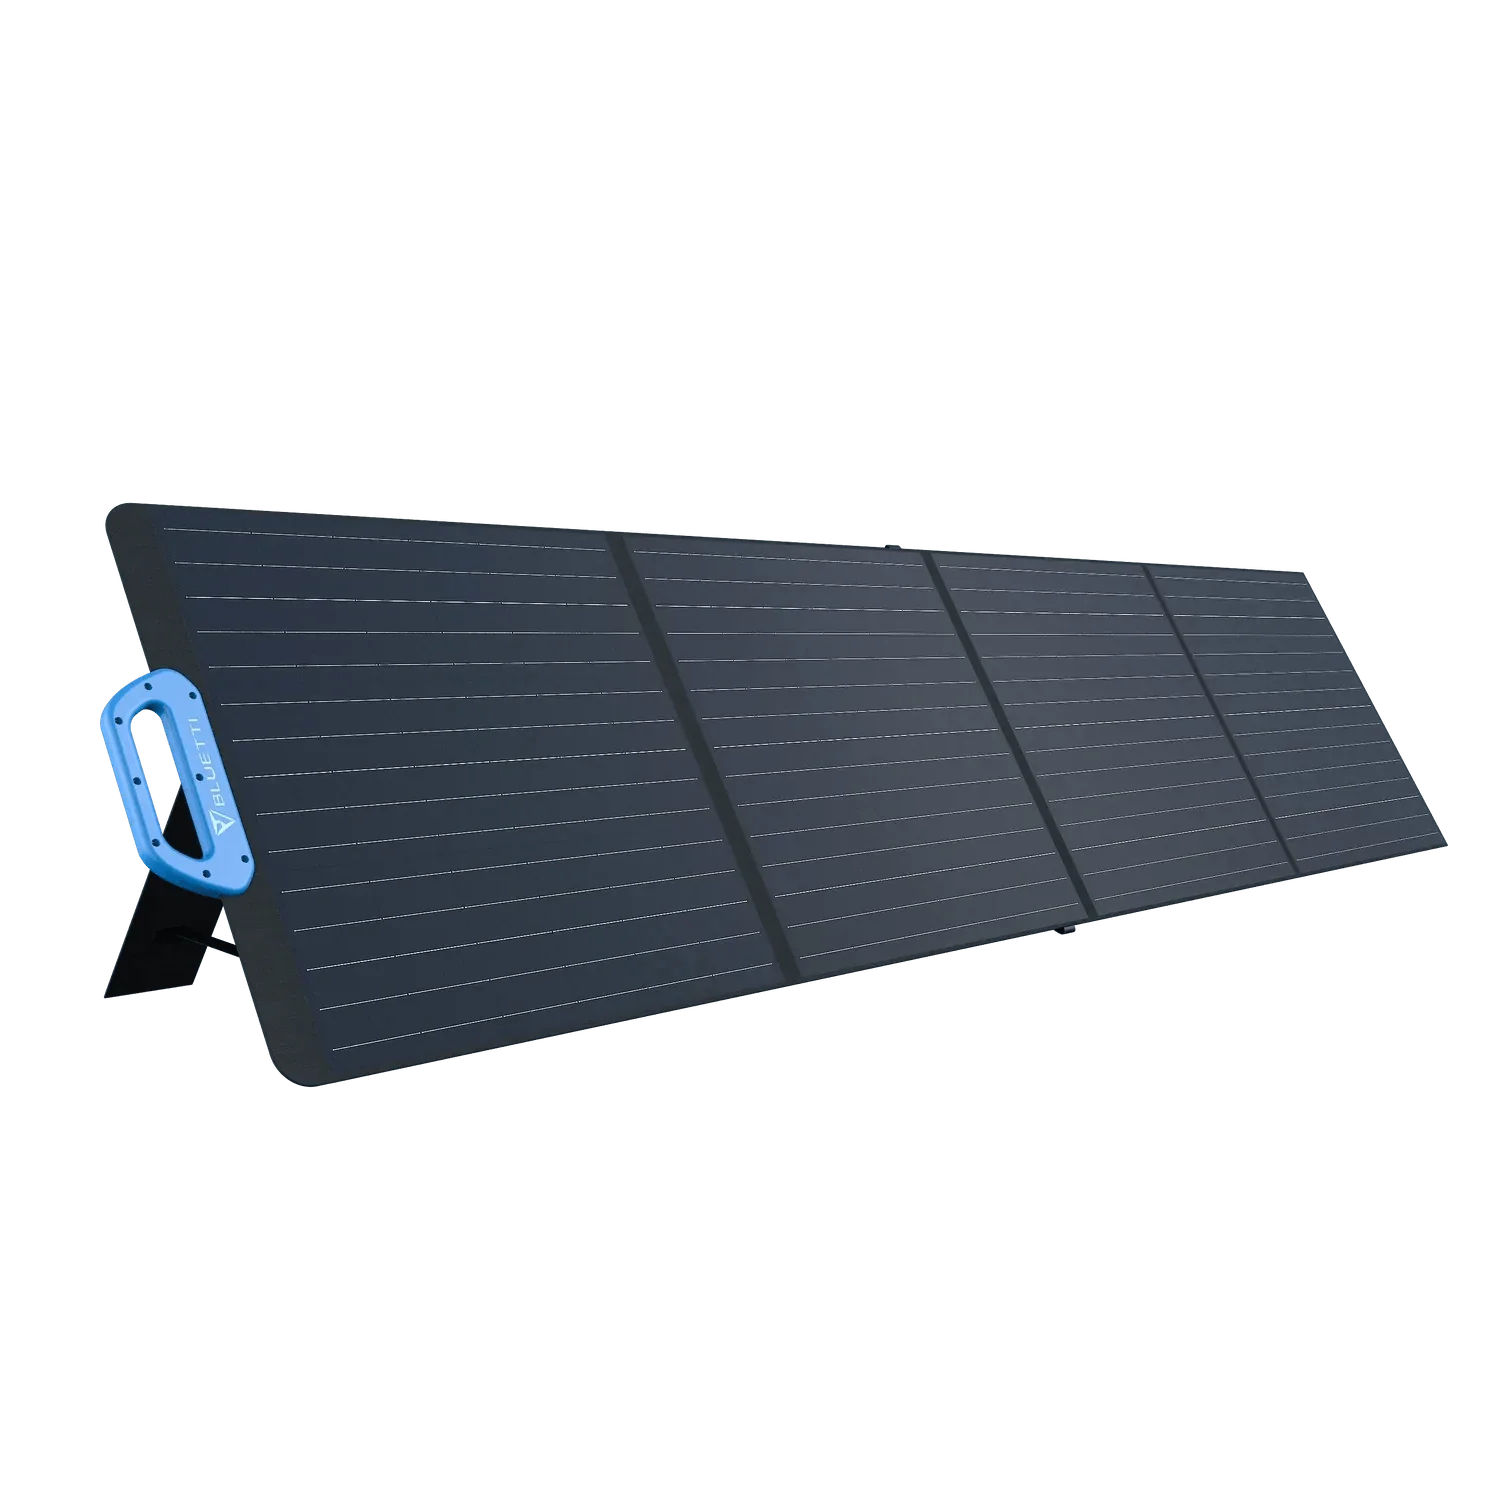 Bluetti PV200 Solar Panel | 200W - New Star Living